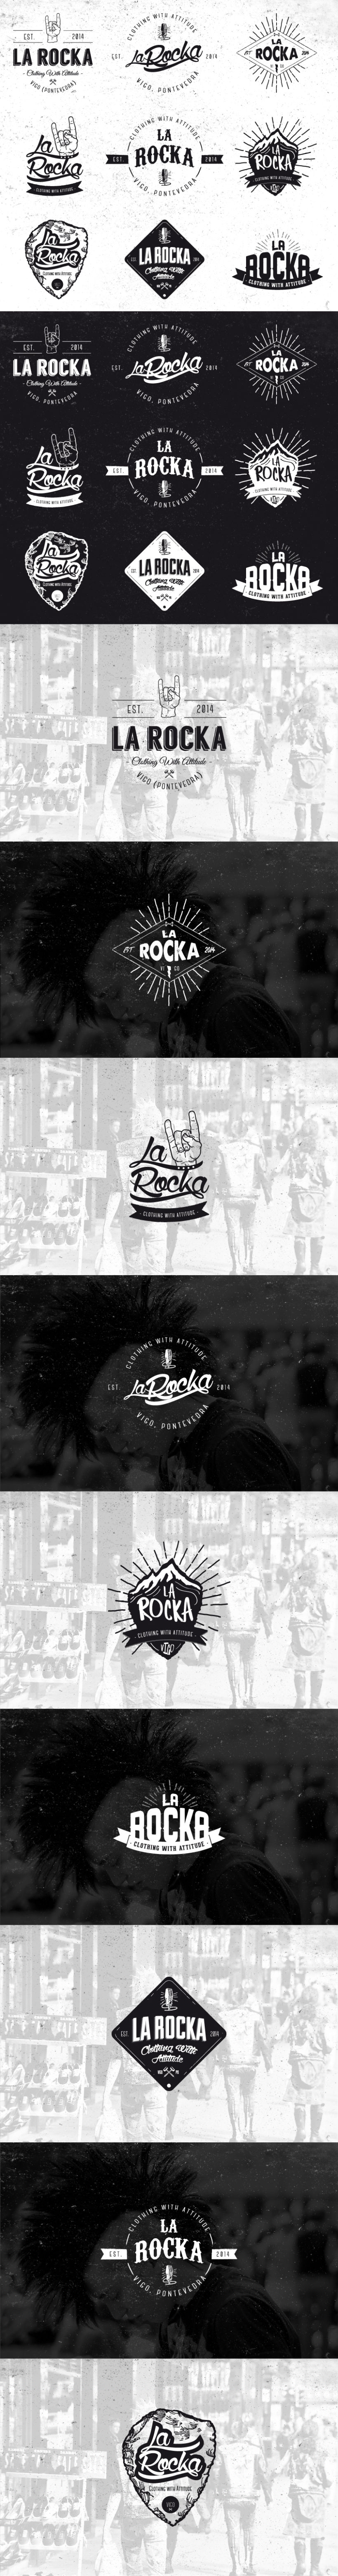 Propuesta Diseño La Rocka · Punk Clothing -1